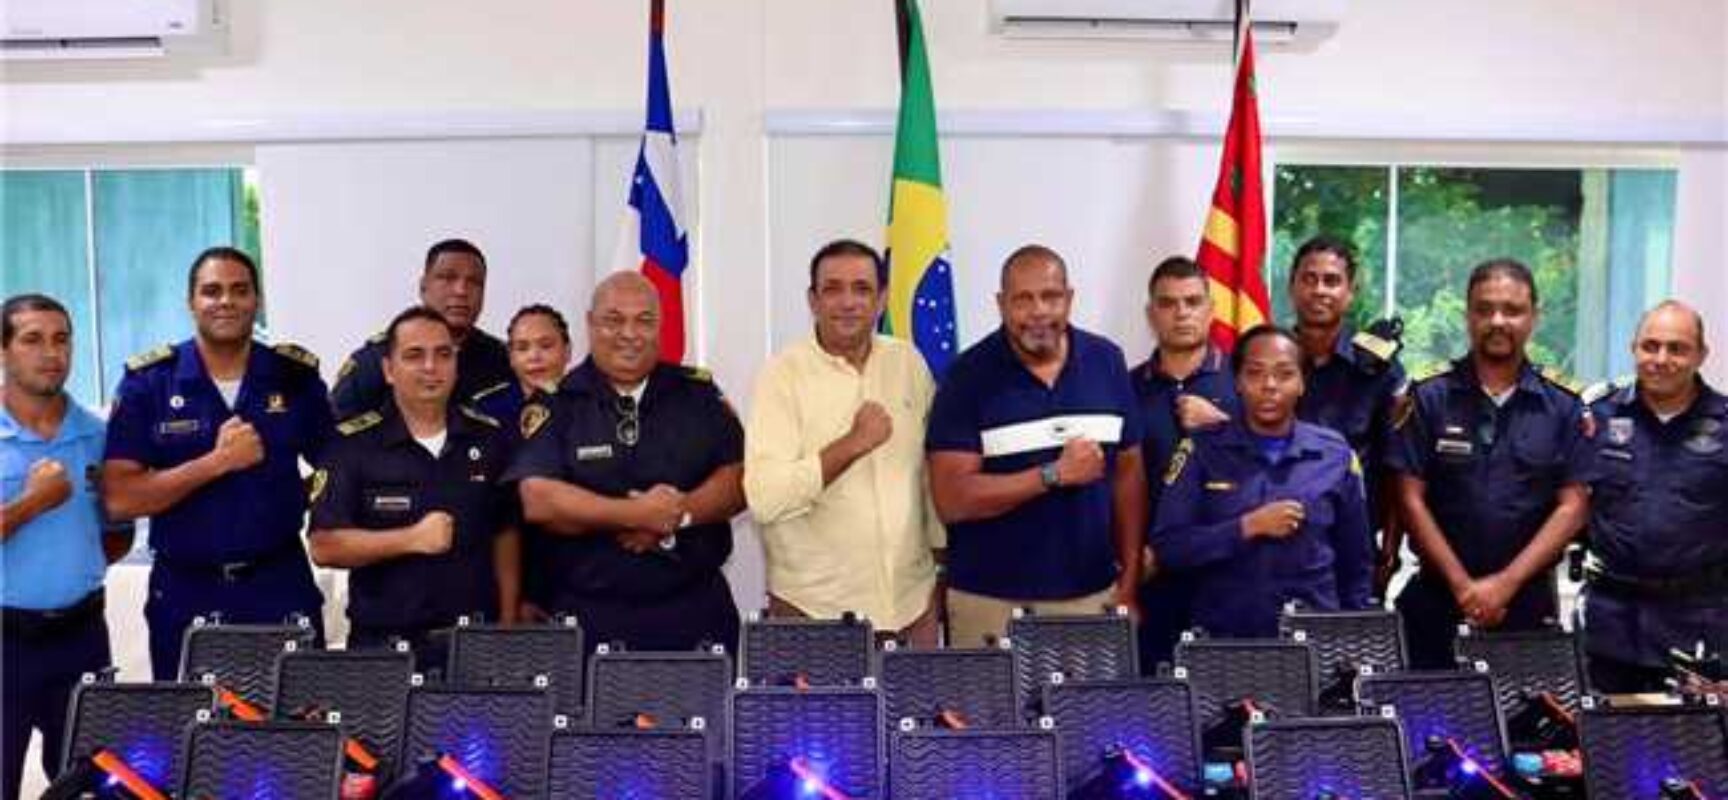 Segurança Pública em Pauta: novos armamentos não letais são adquiridos